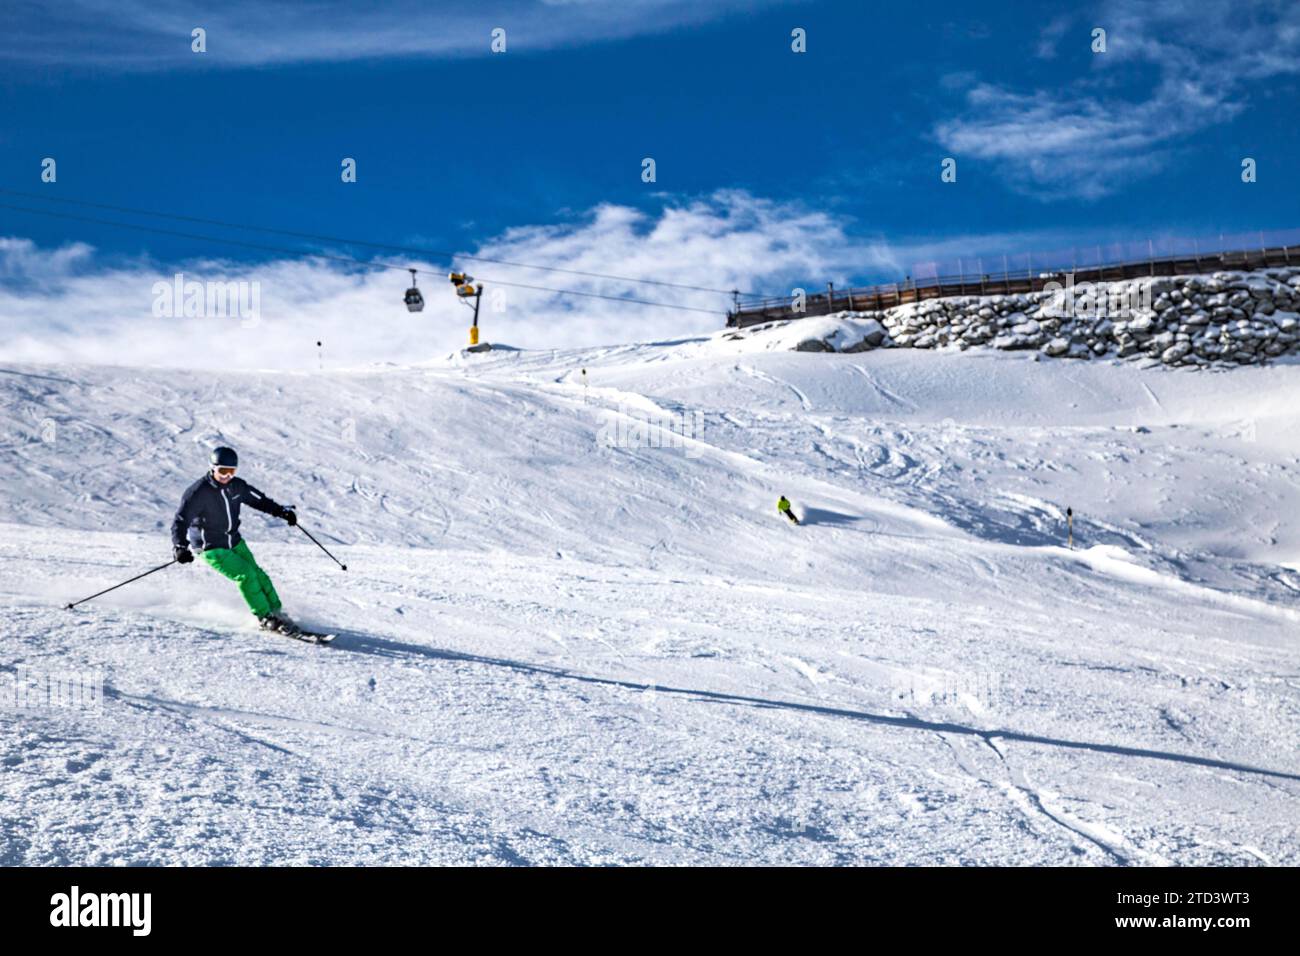 Schwarze Schneid ski run, Rettenbachferner, glacier ski area, Soelden, Oetztal, Tyrol Stock Photo